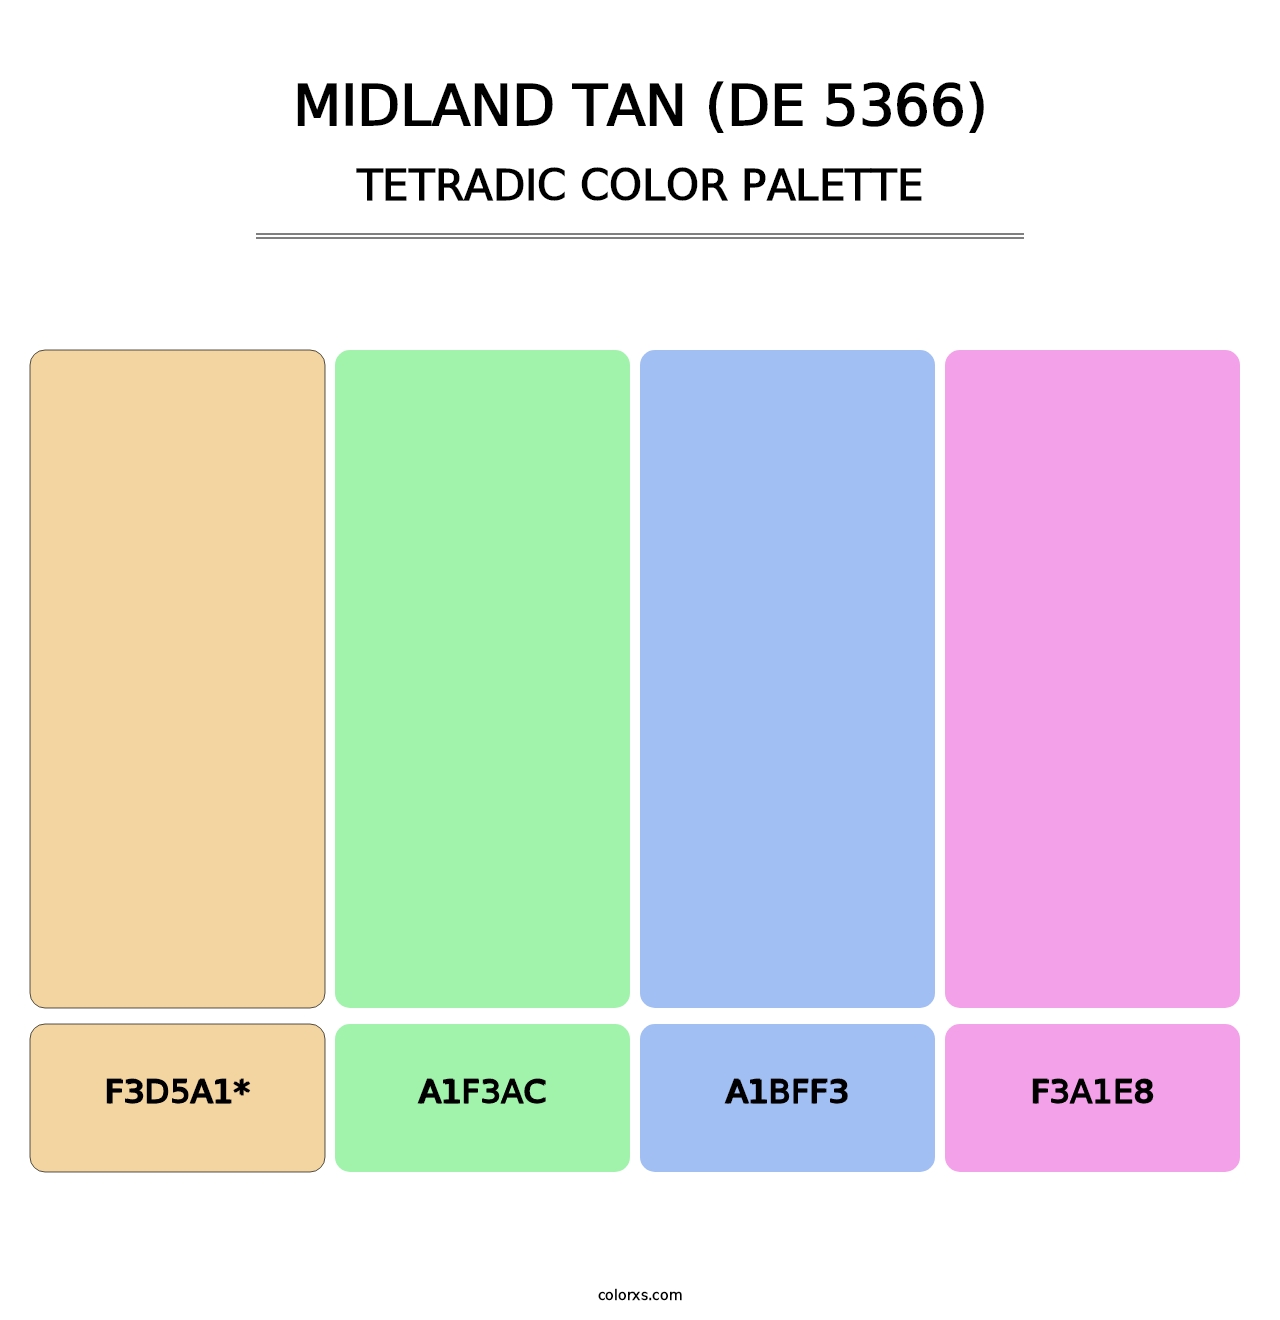 Midland Tan (DE 5366) - Tetradic Color Palette